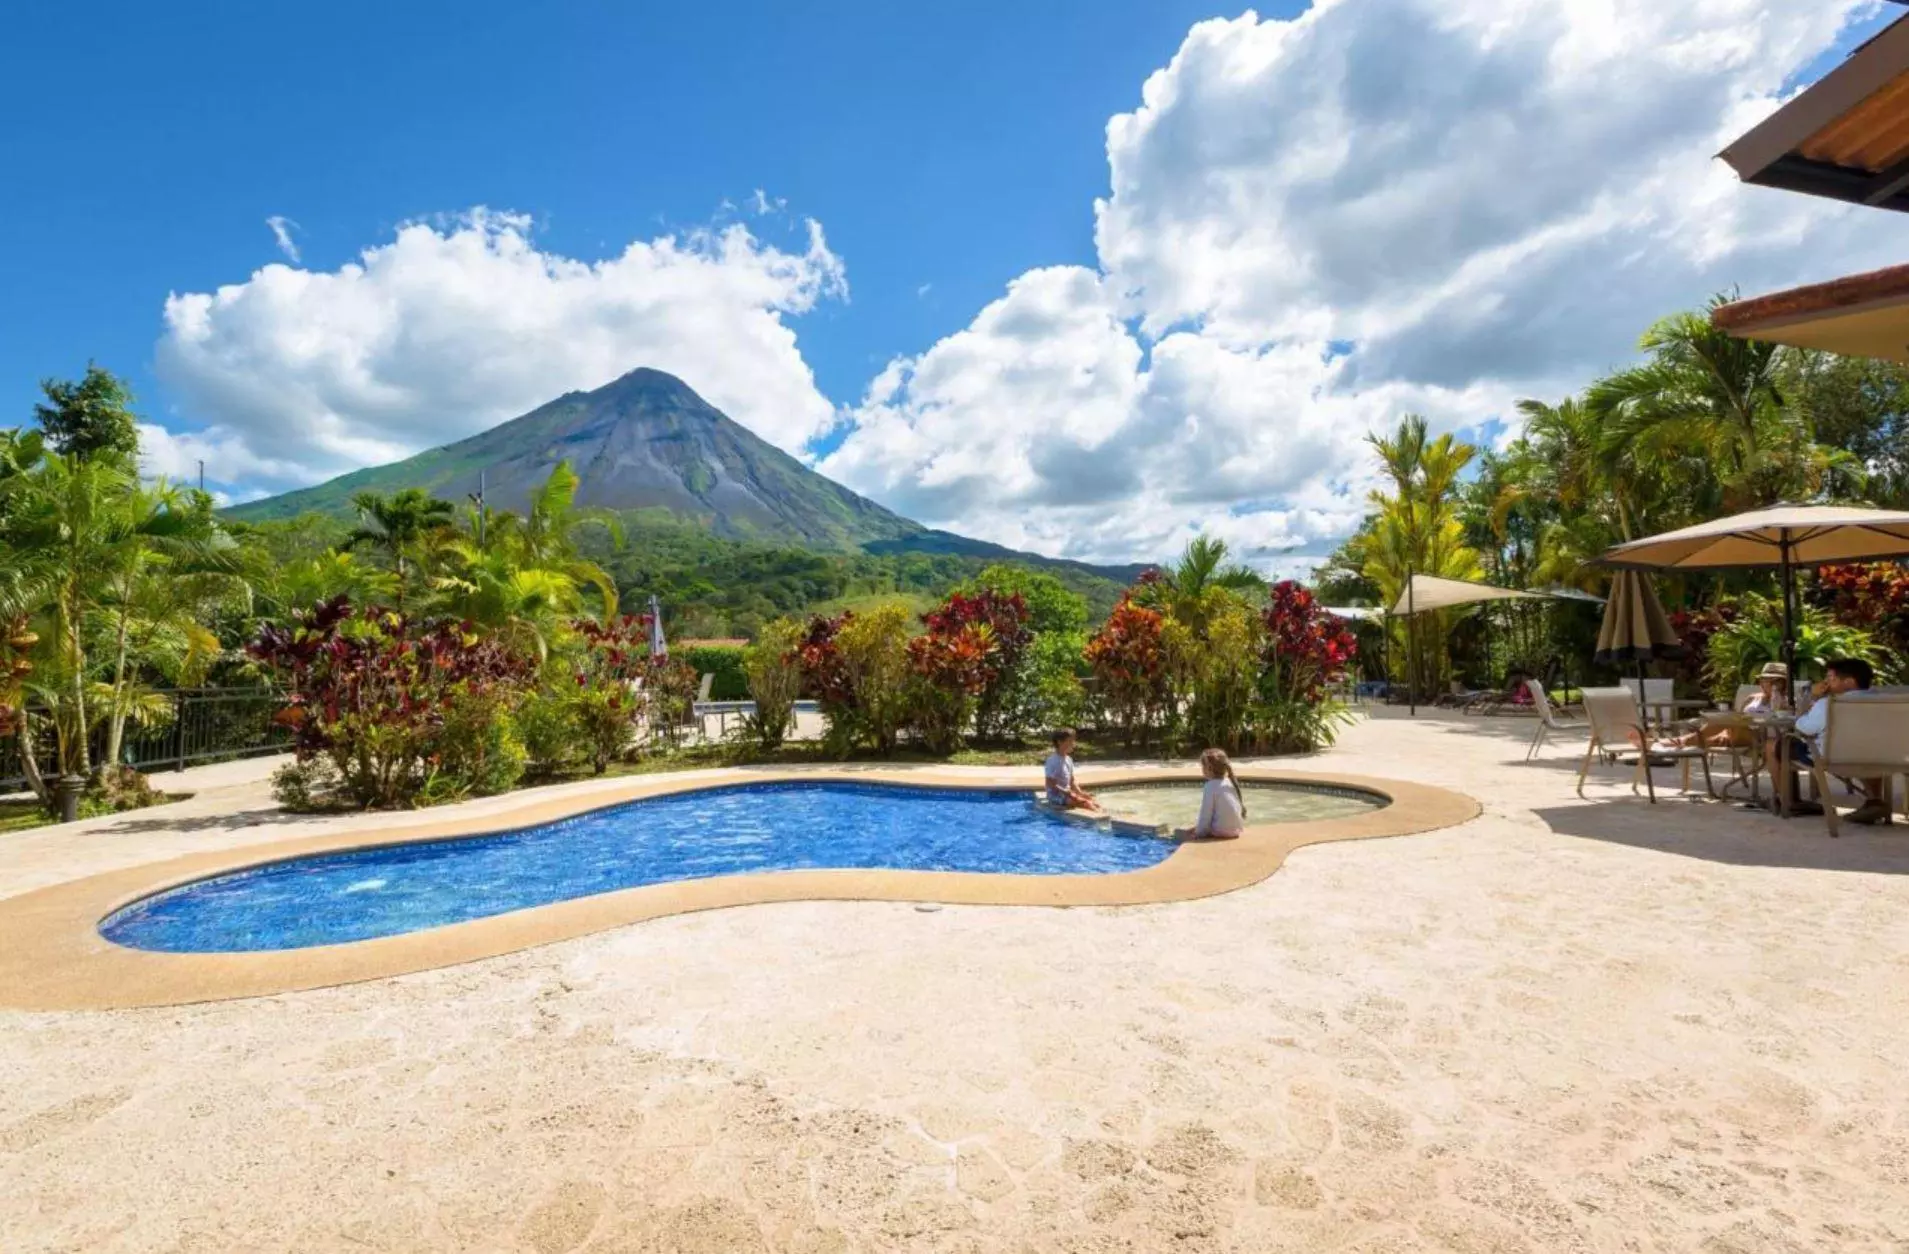 Hotel Kioro al vulcano Arenal Costa Rica